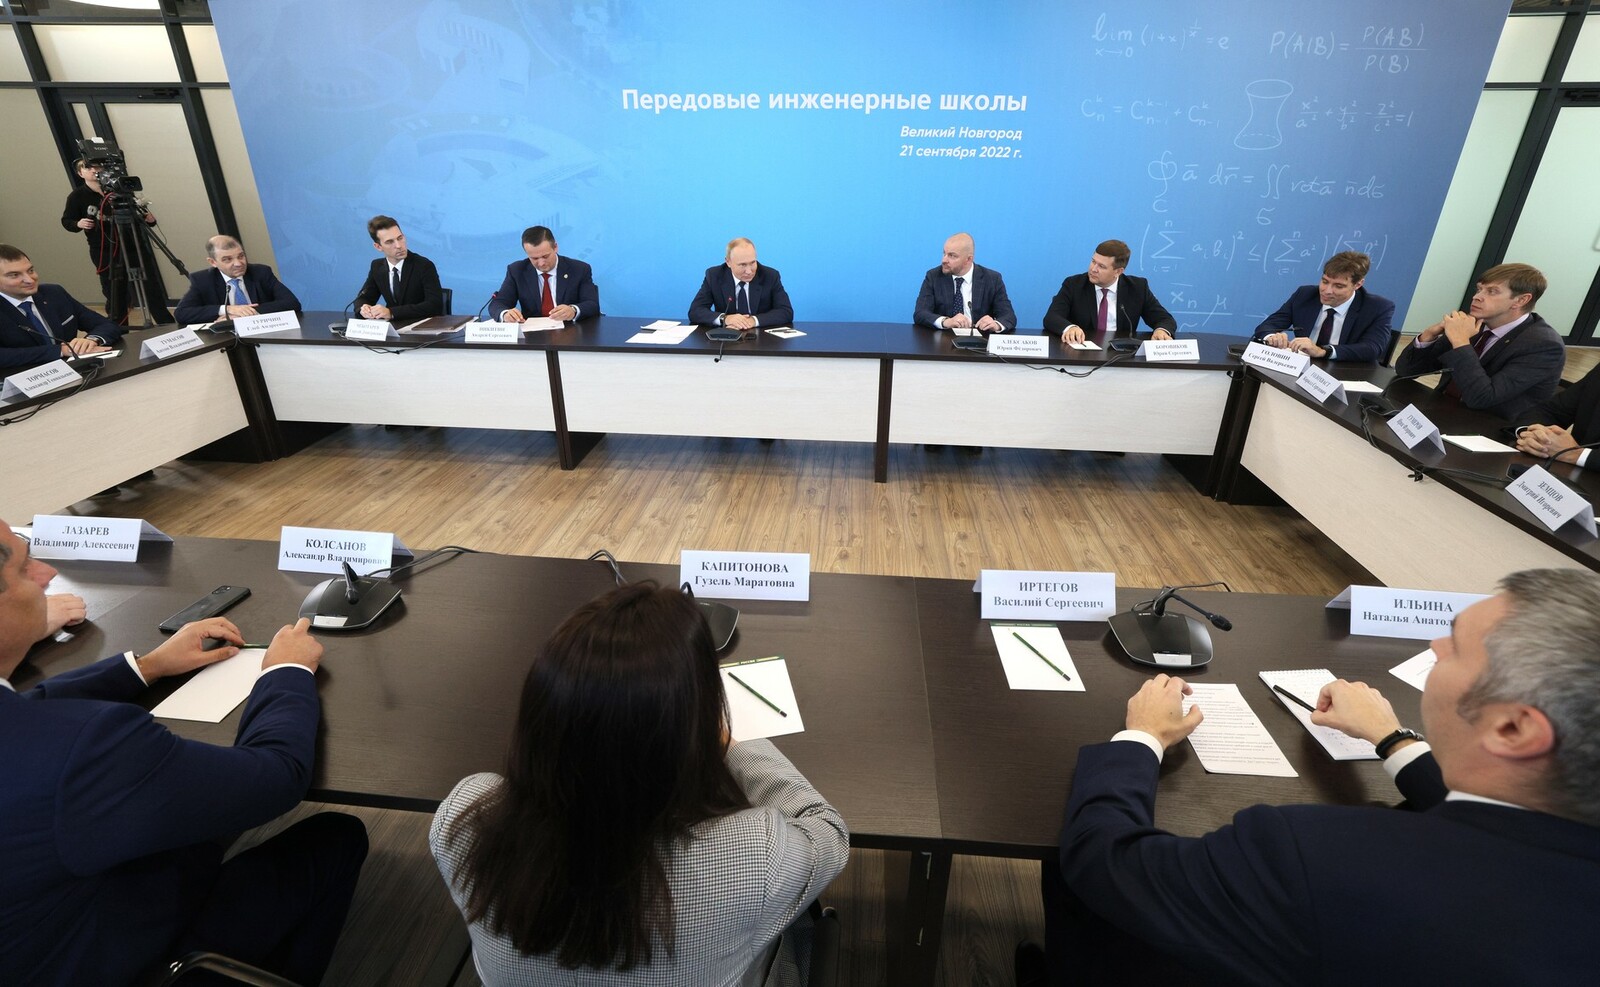 Встреча Президента РФ Владимира Путина с руководителями передовых инженерных школ и их индустриальными партнёрами